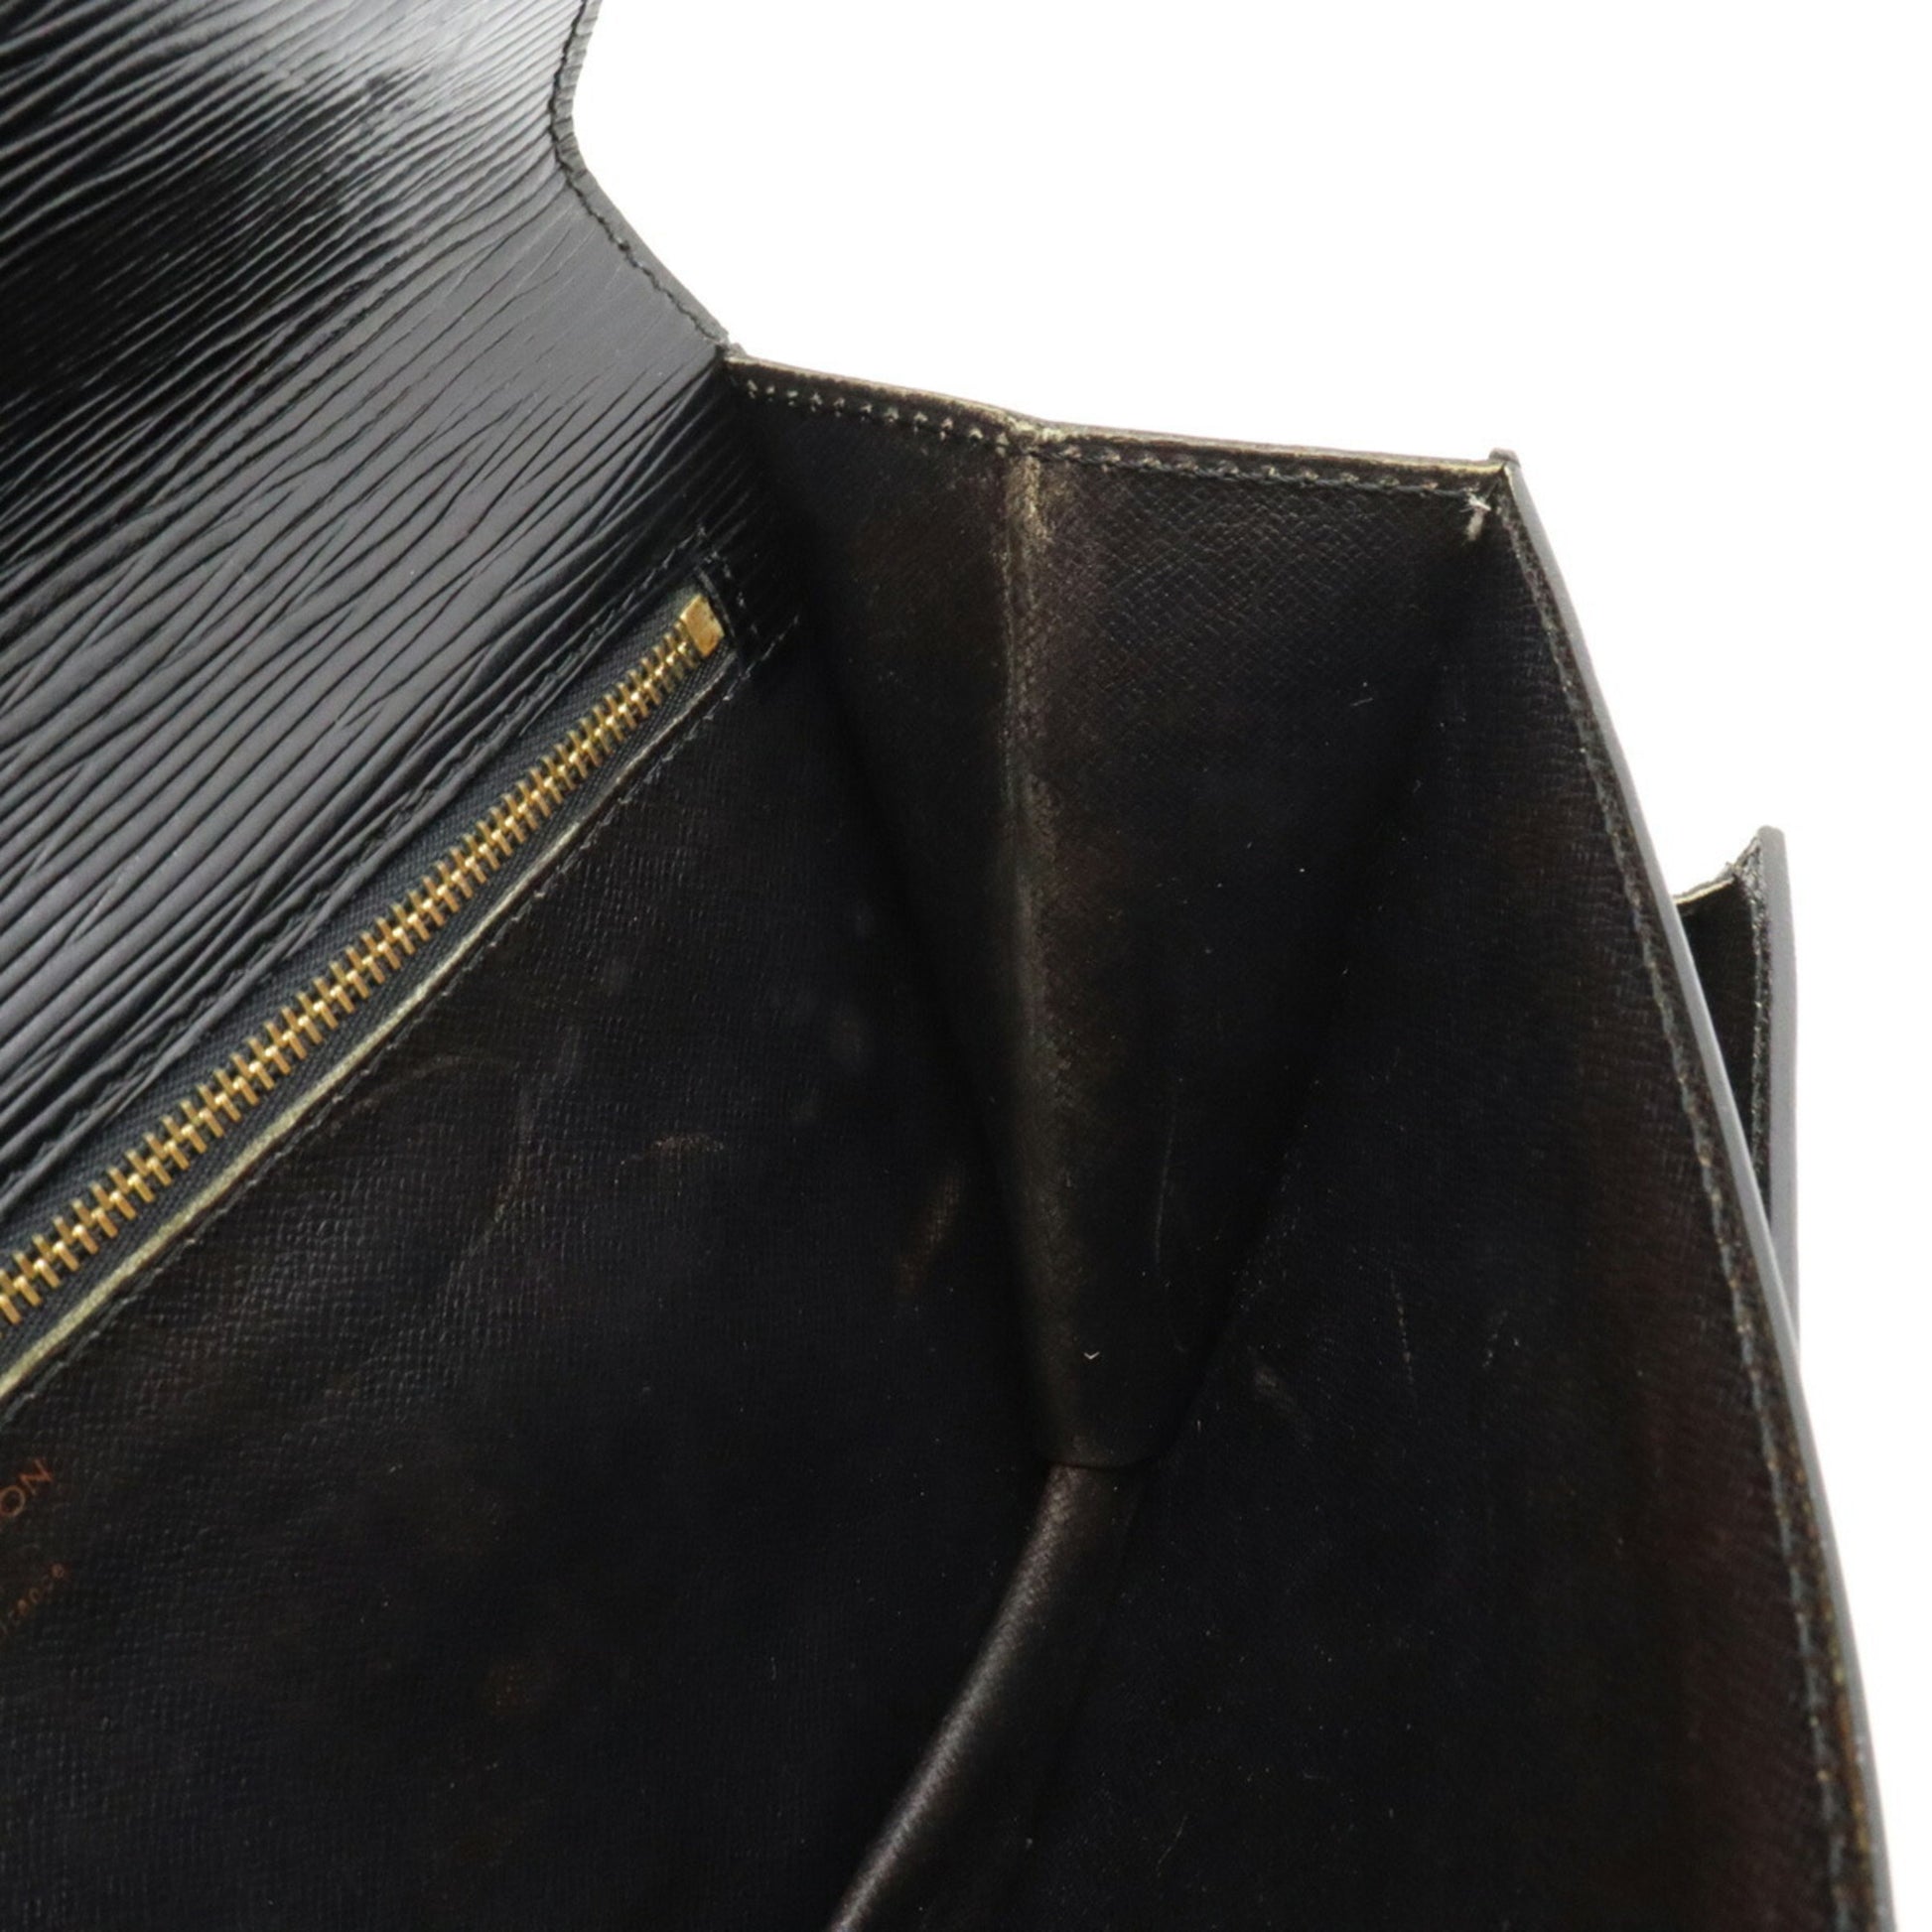 LOUIS VUITTON Louis Vuitton Epi Pochette Serie Dragonne Second Bag Noir  Black Key Missing M52612